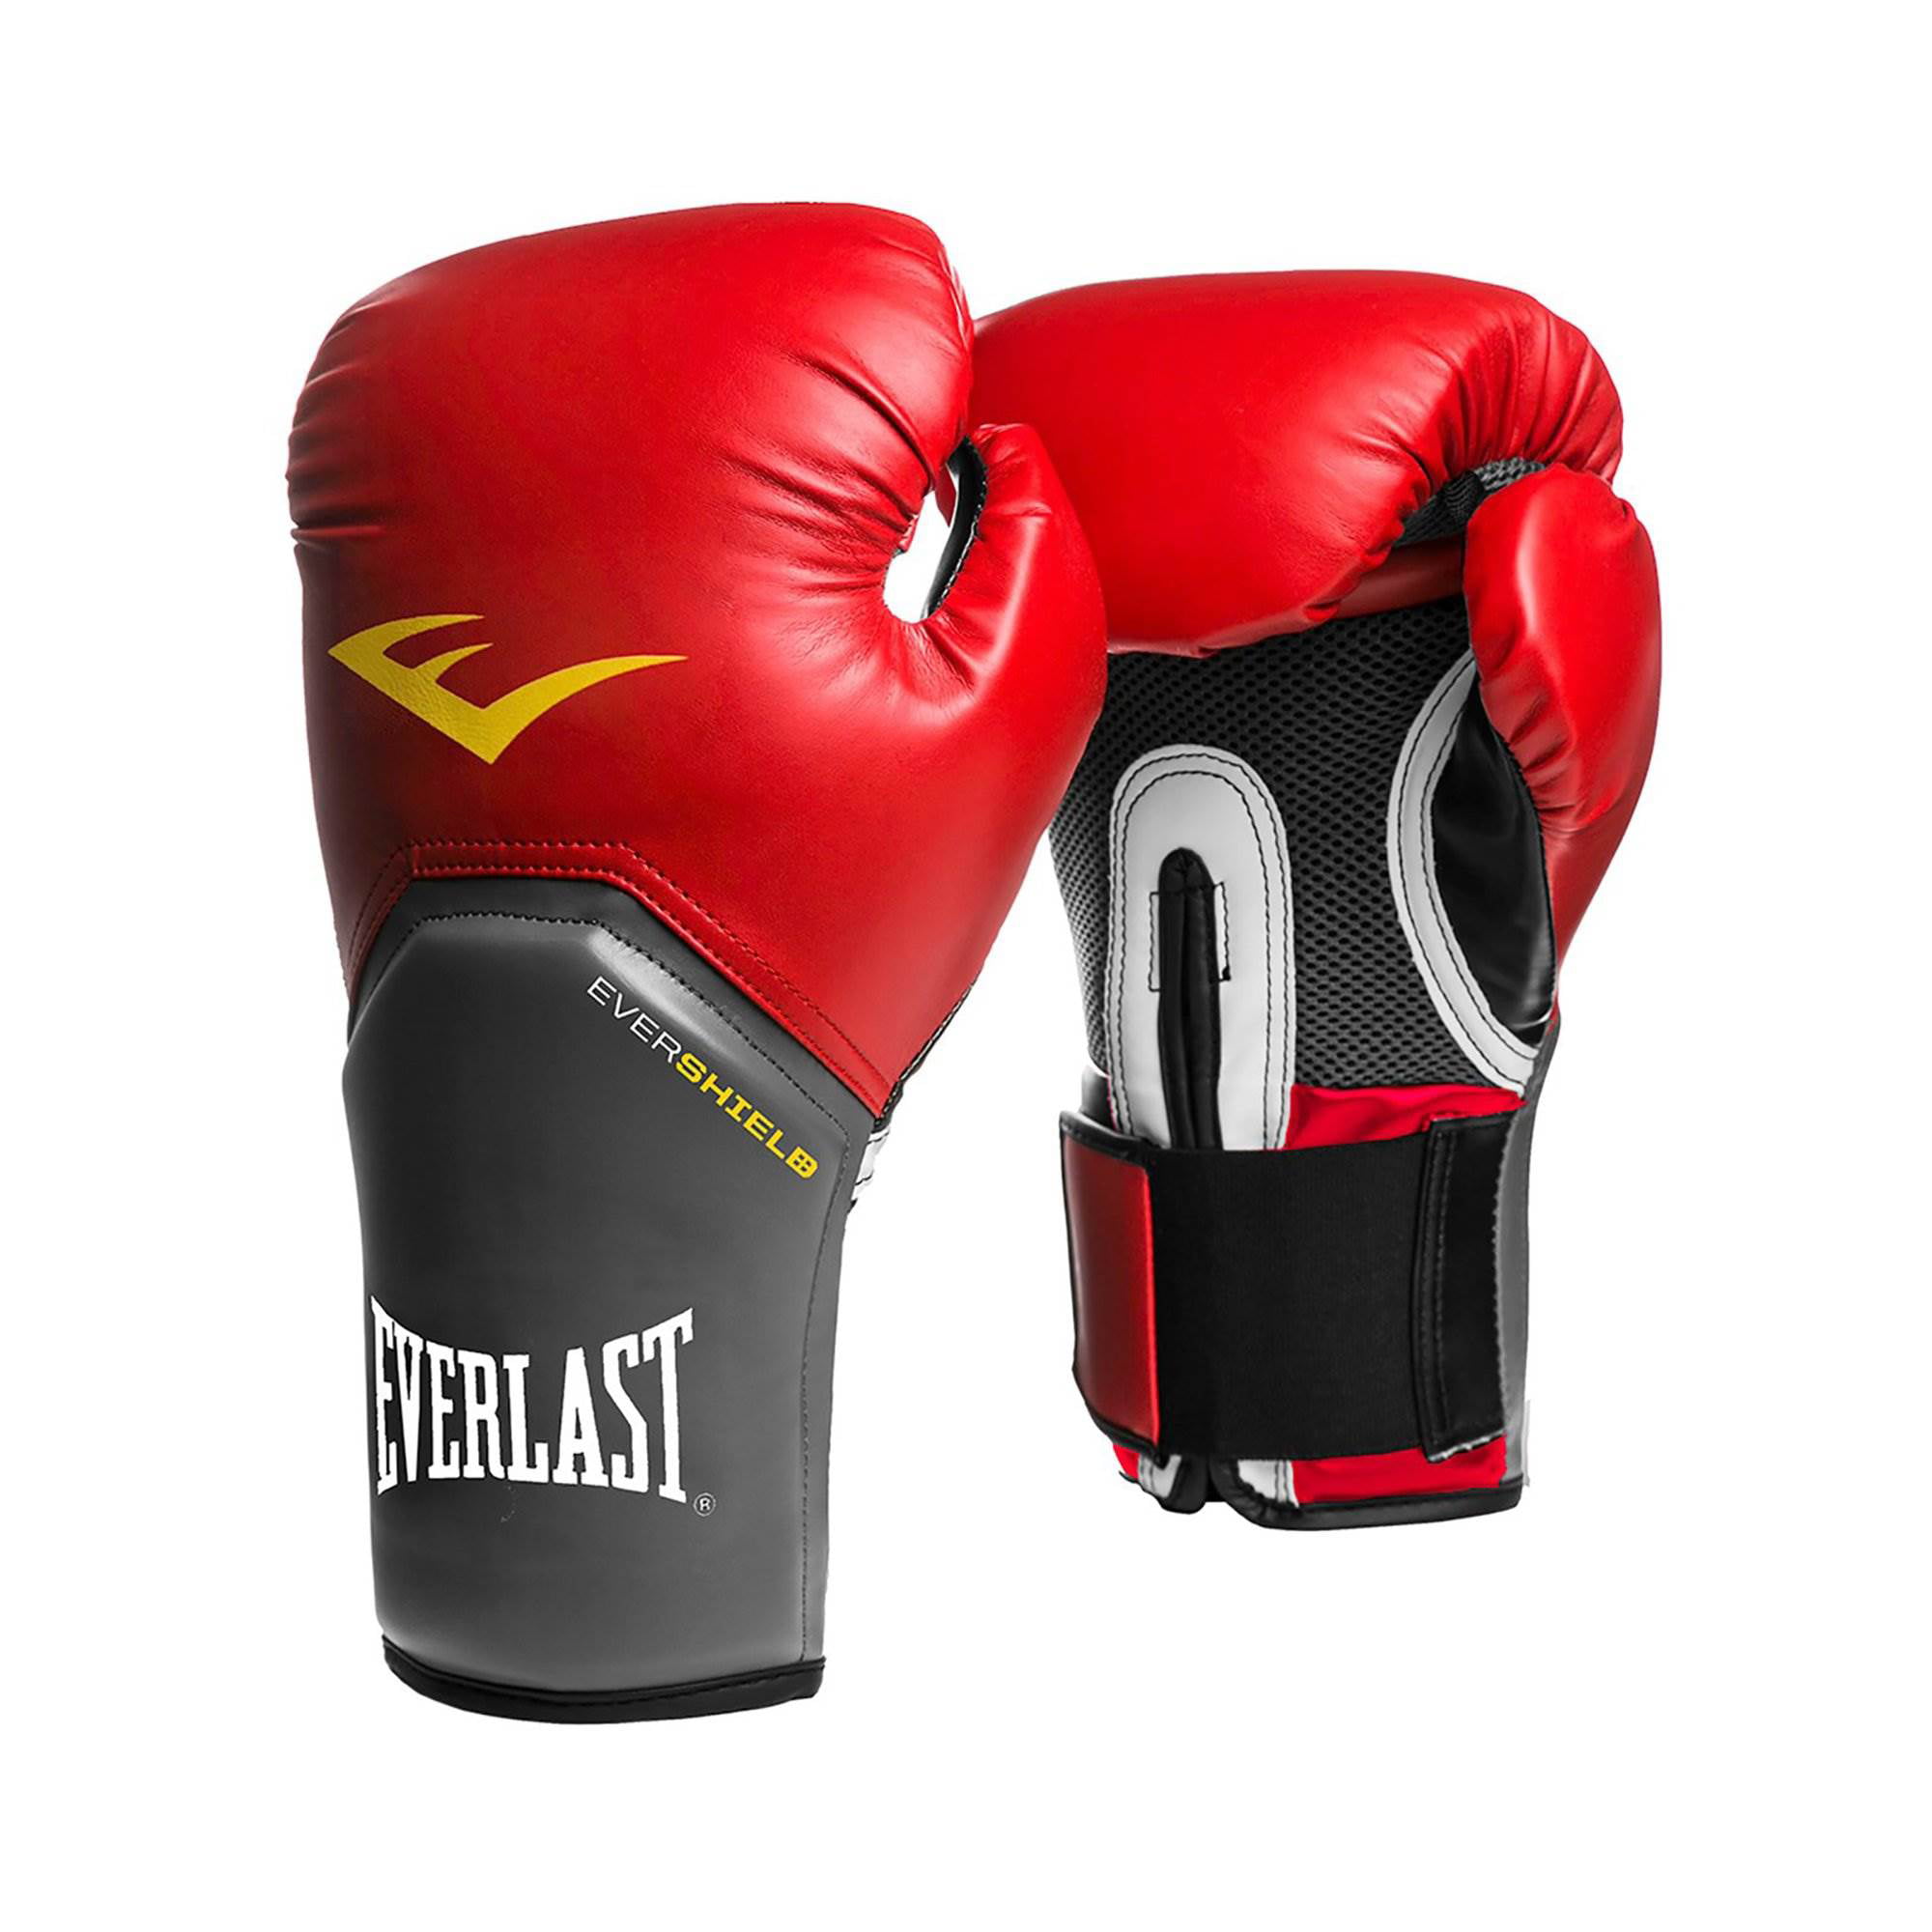 Everlast 16 Oz Pro Style Elite Cardio Kickboxing and Boxing Training ...